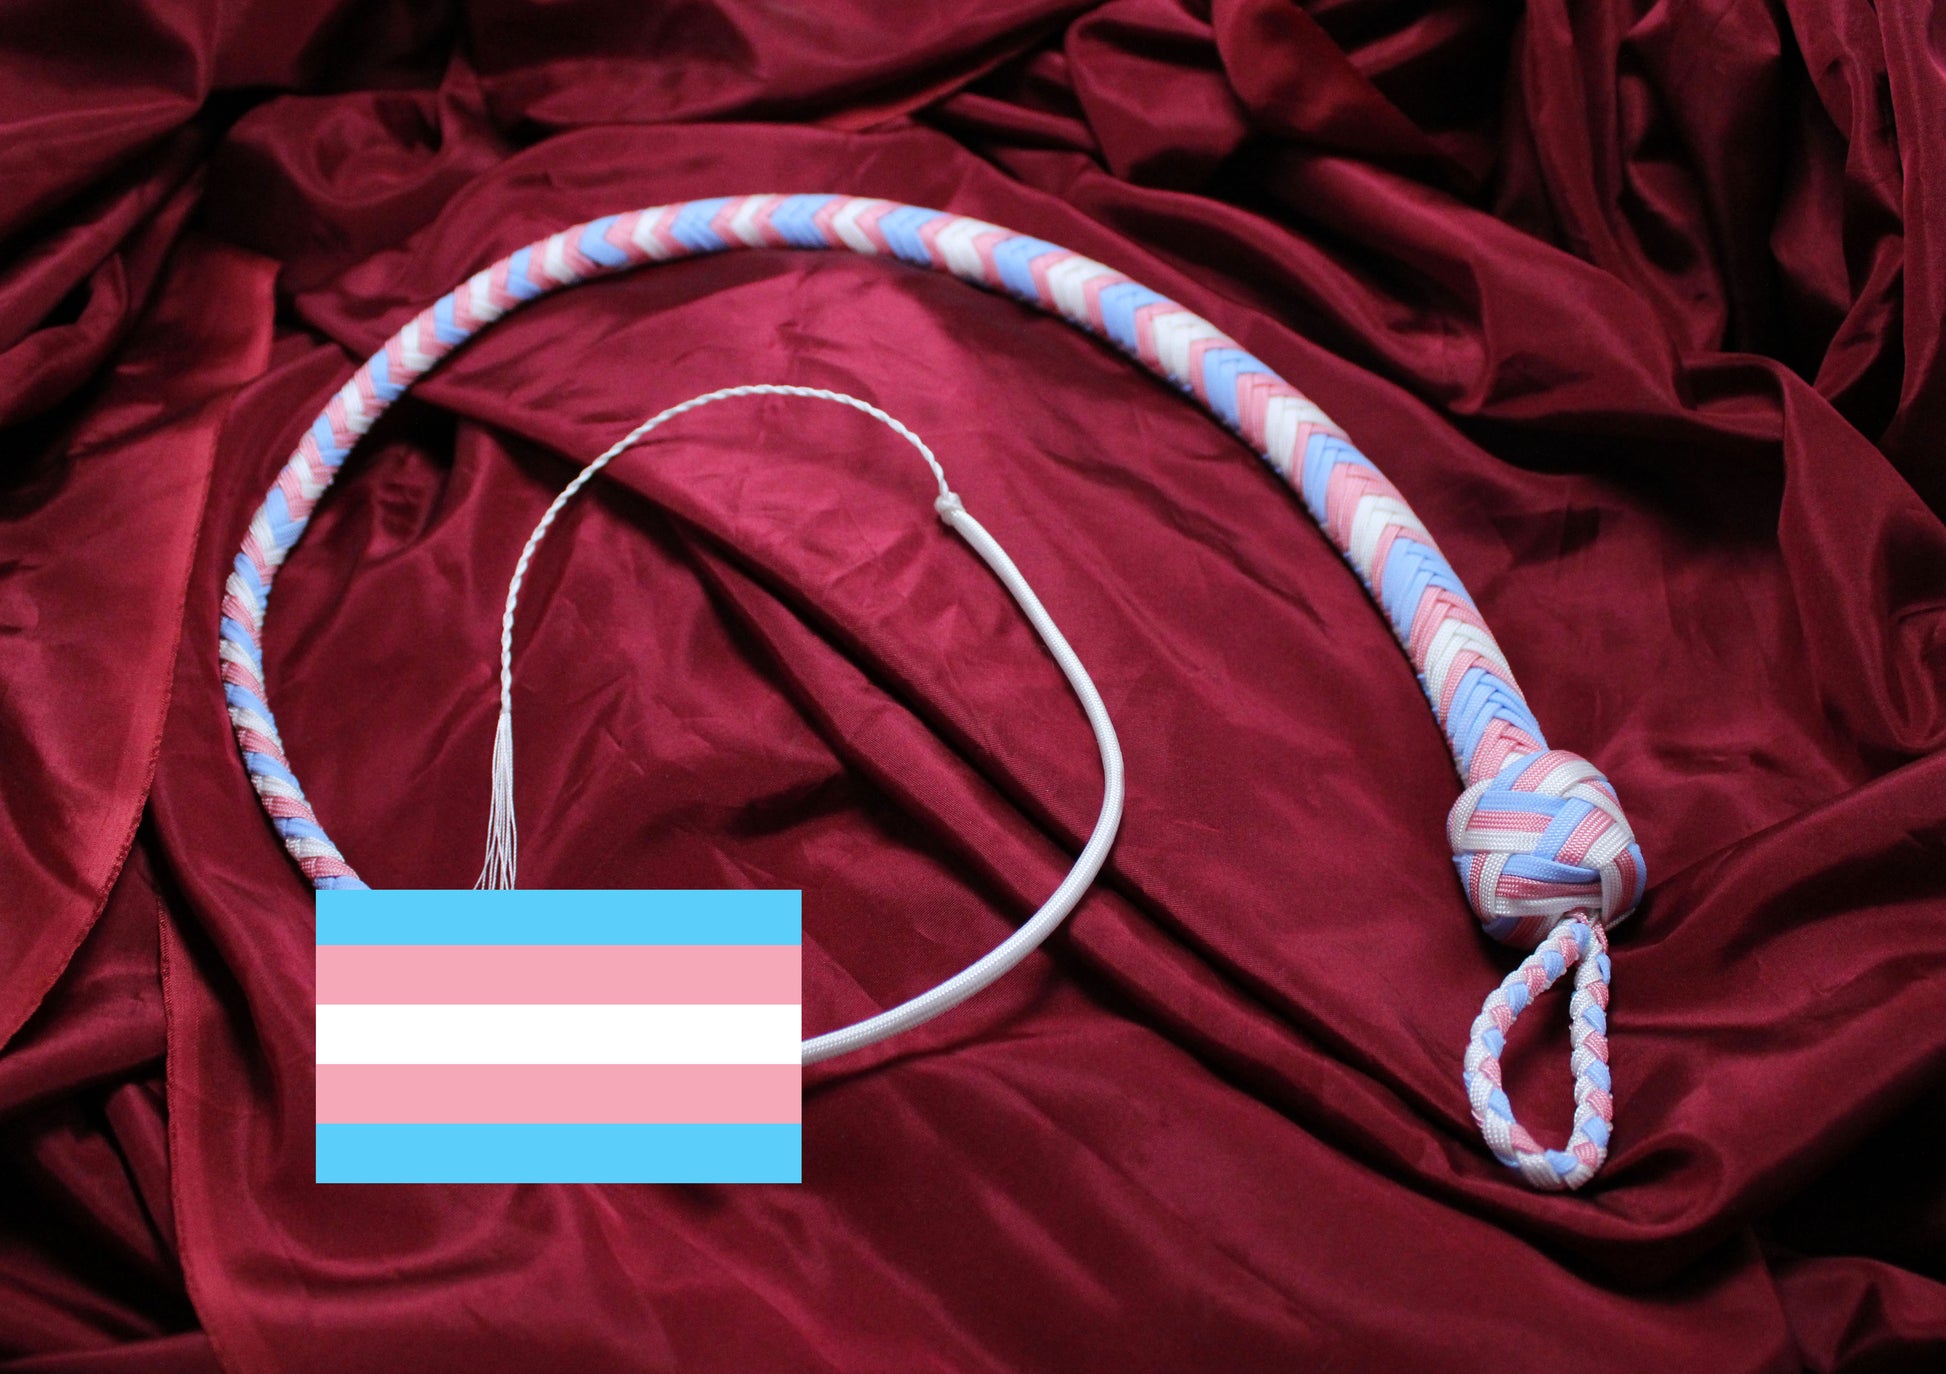 Fouet en paracorde aux couleurs du drapeau de fierté trans, le drapeau de fierté trans est incrusté dans l'image